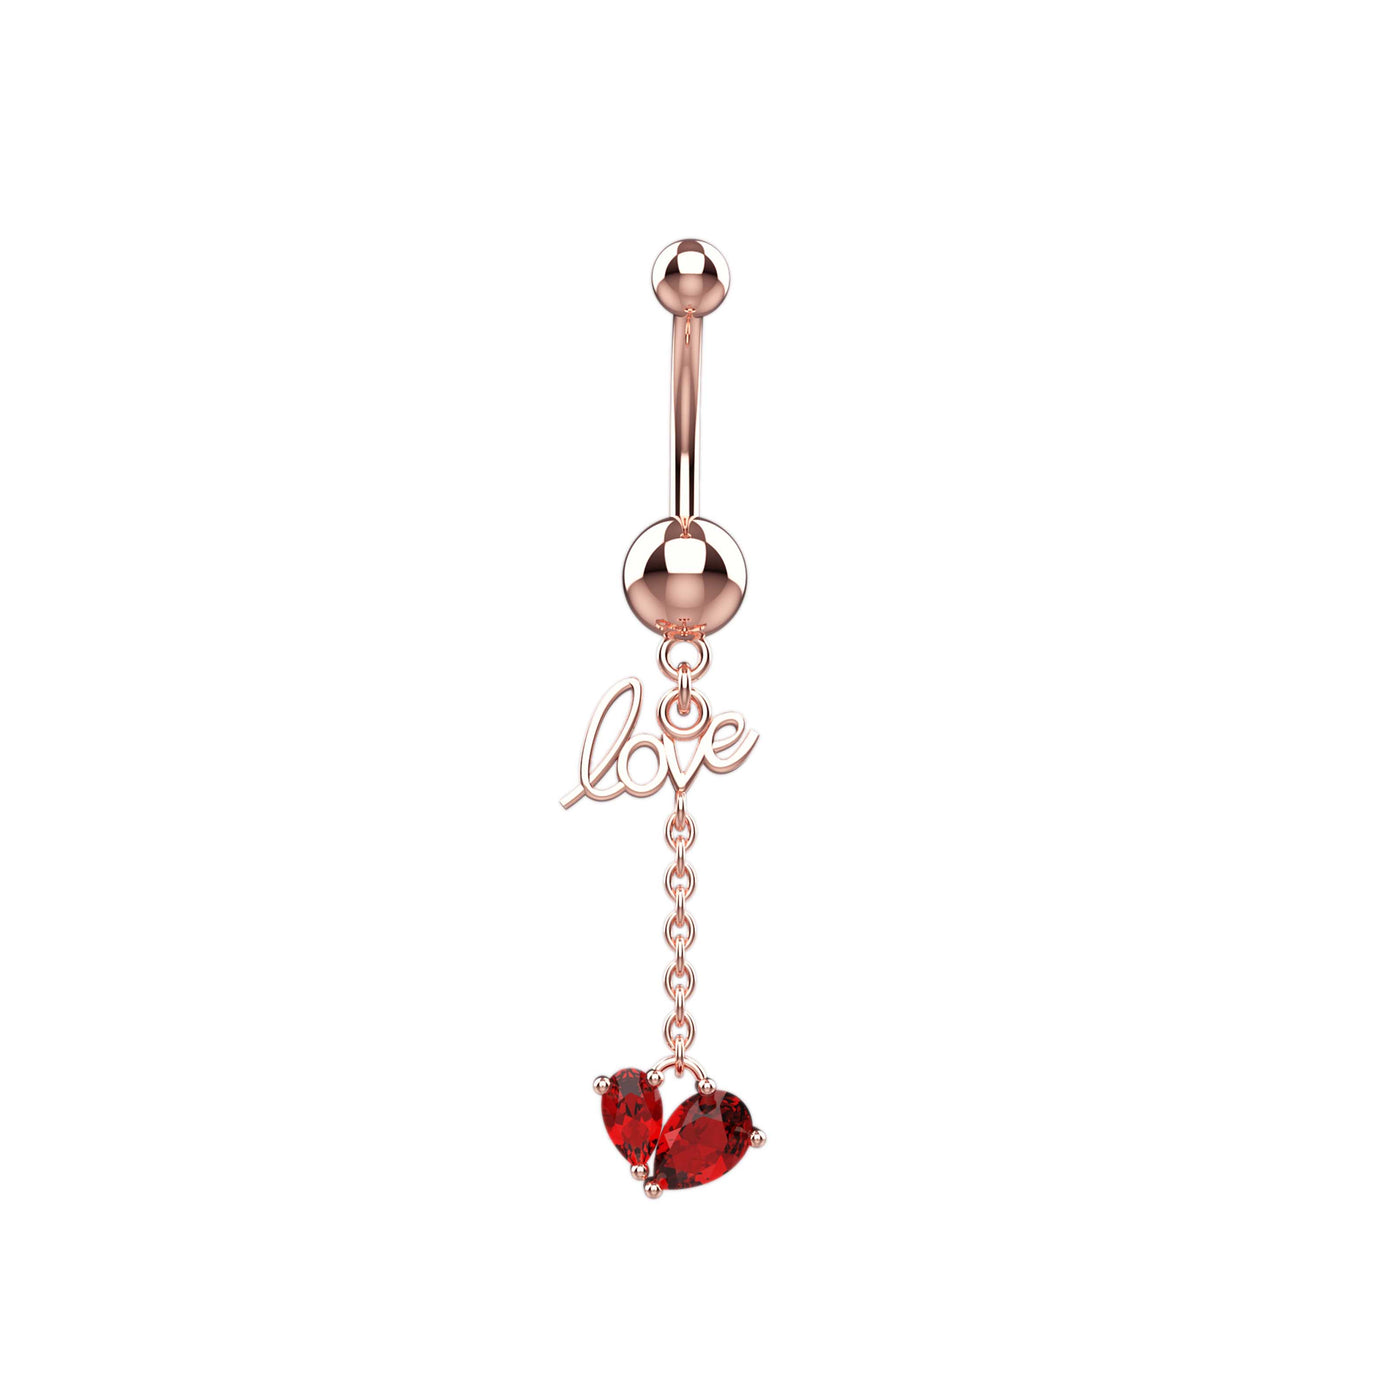 Love & Heart Shape Belly Button Piercing Jewelry